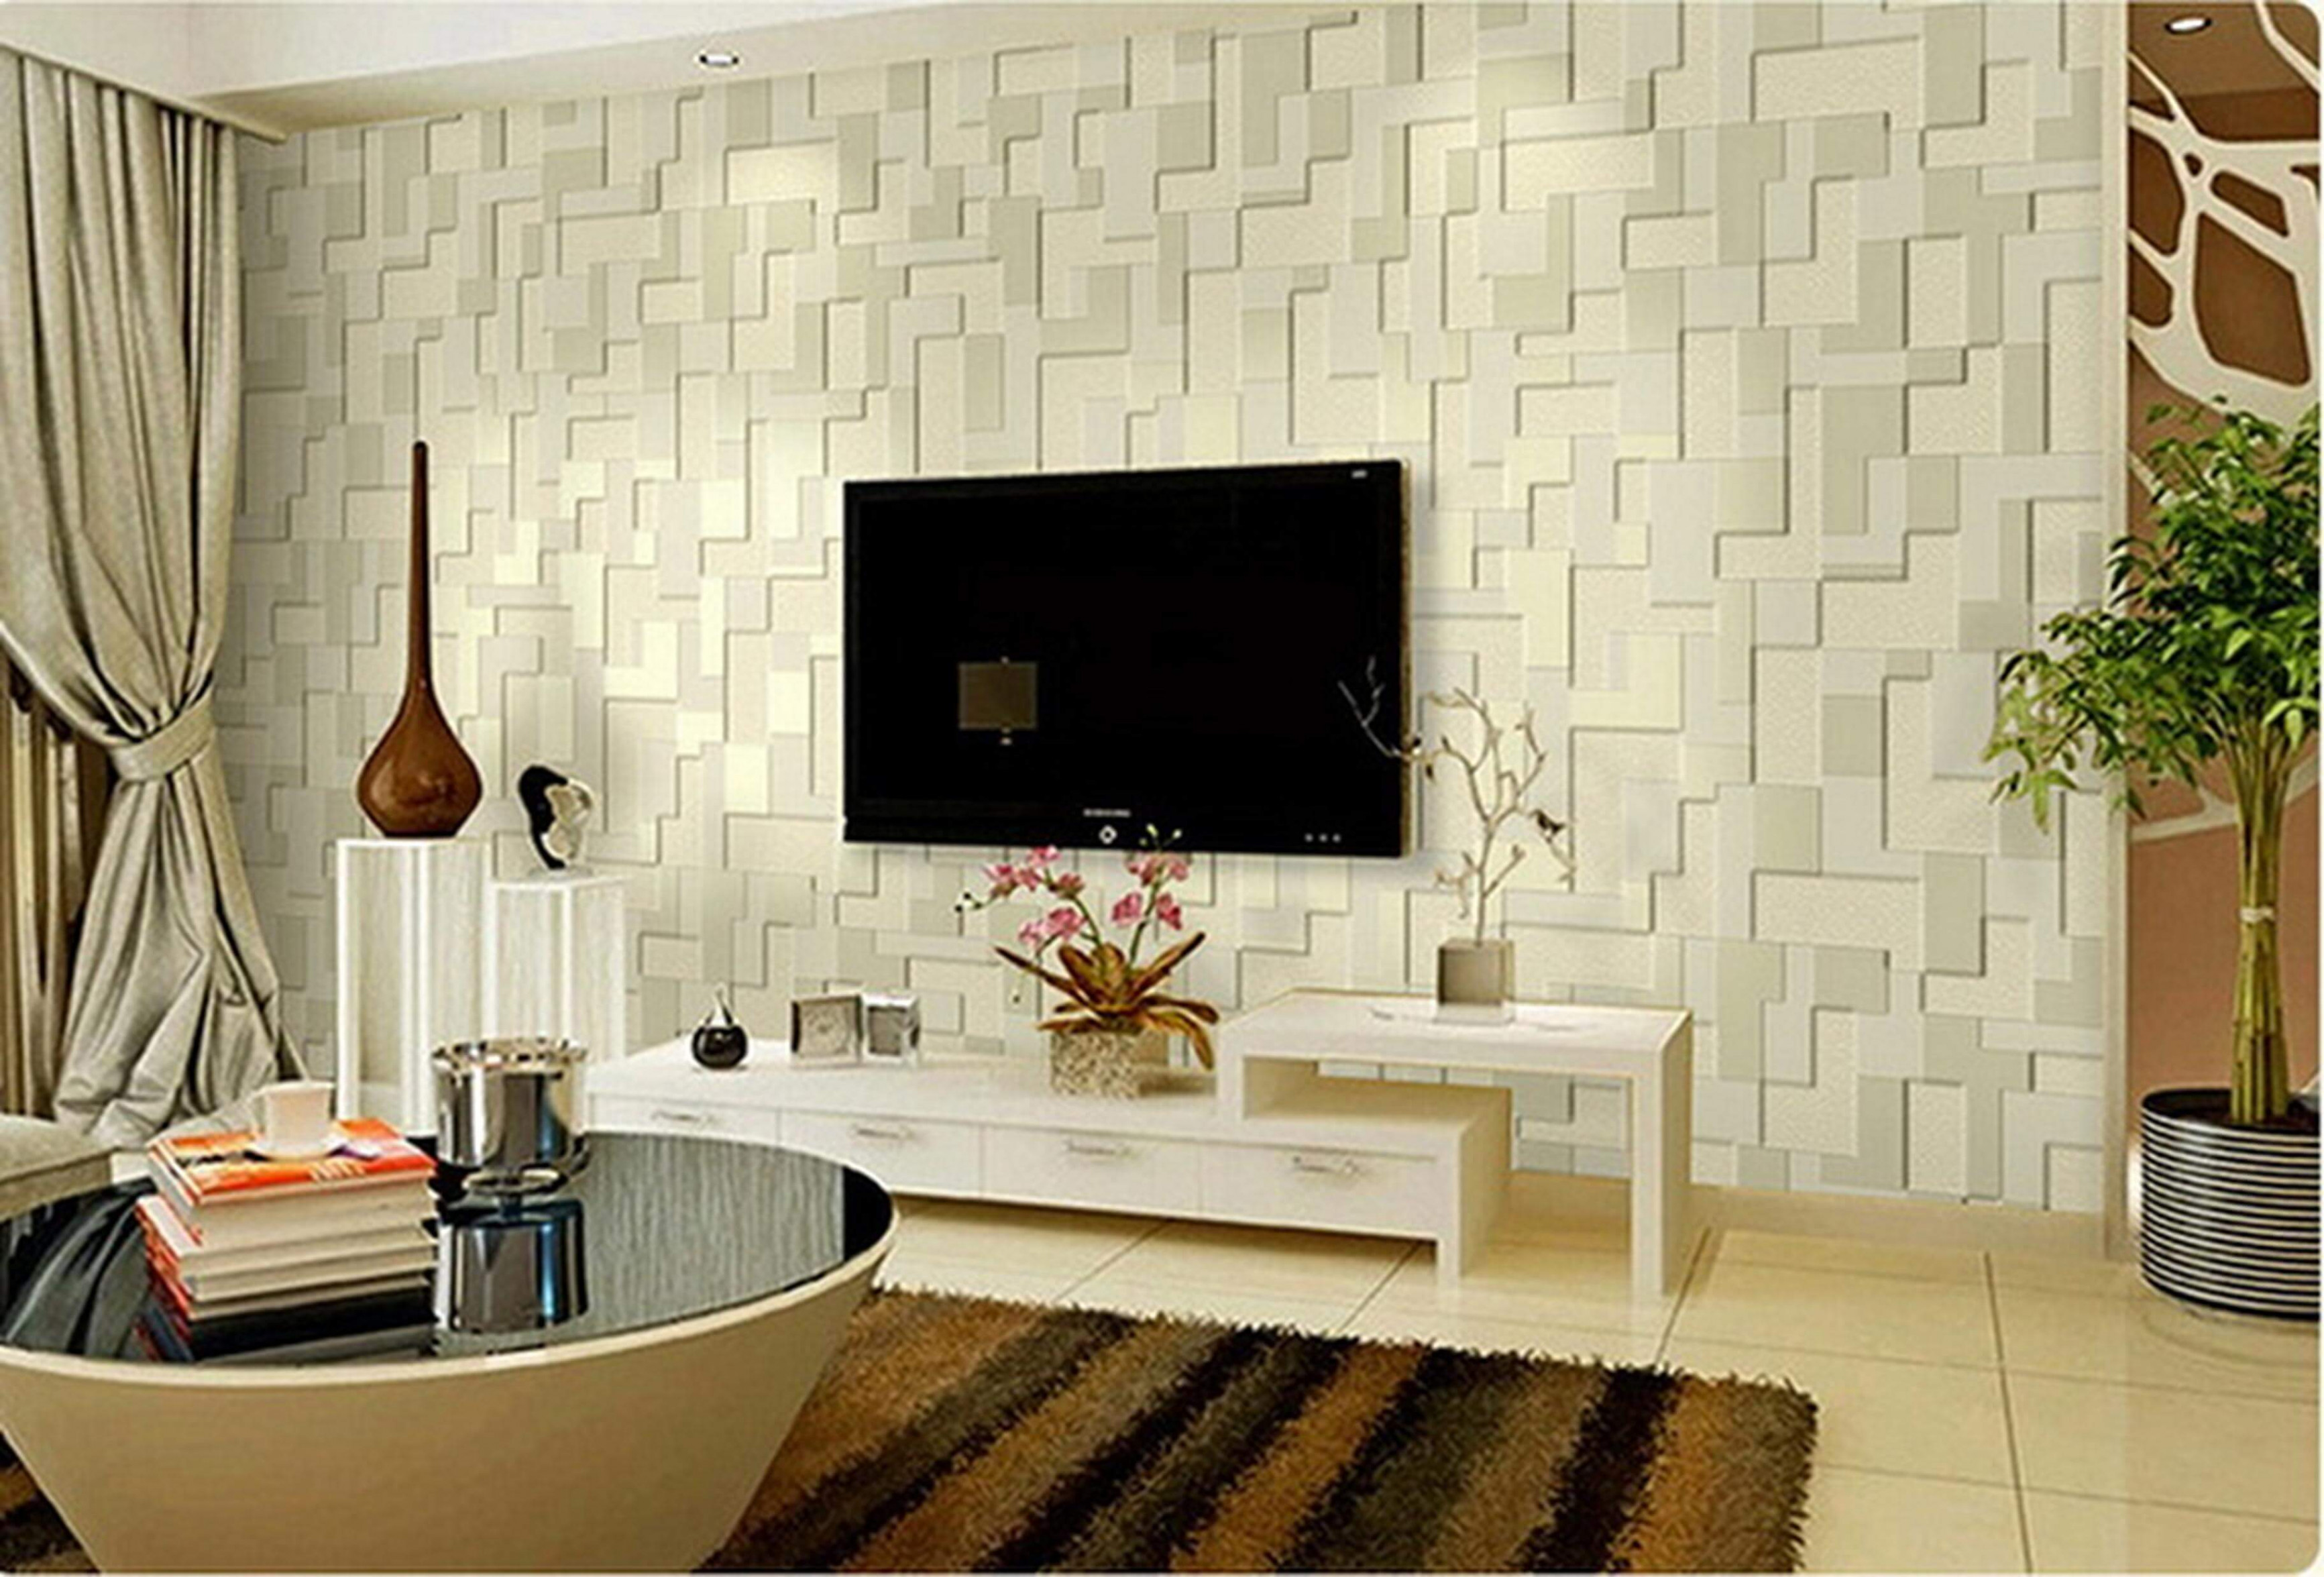 3d Wallpaper Designs For Living Room Best Of Modern